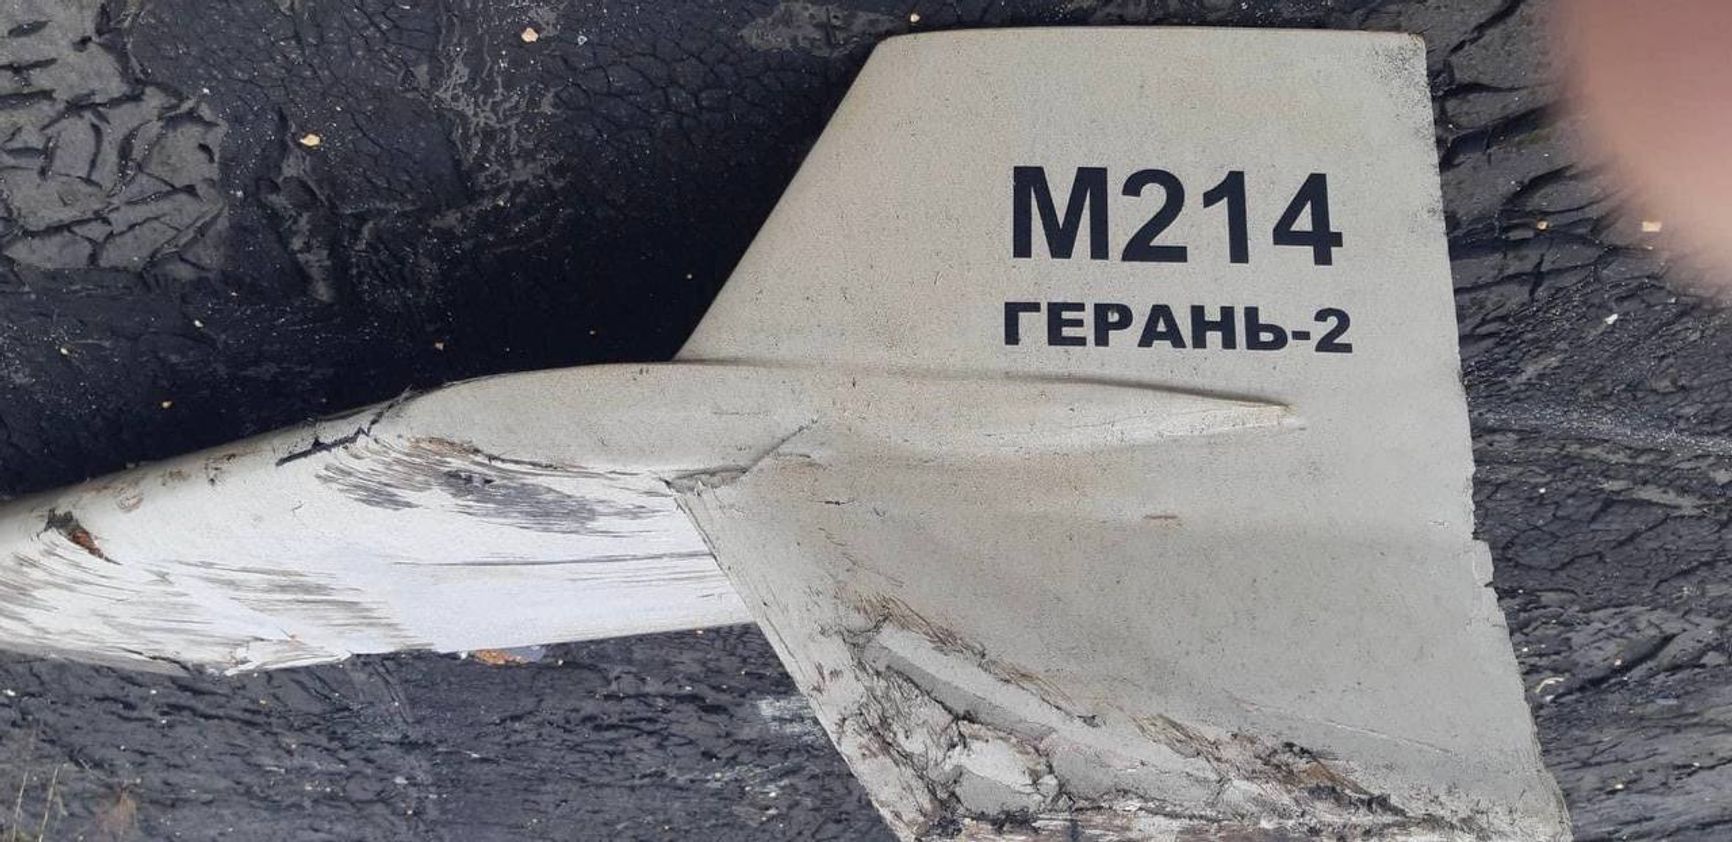 ВСУ впервые сбили иранский дрон Shahed-136, который Россия пыталась замаскировать под свой беспилотник «Герань-2»